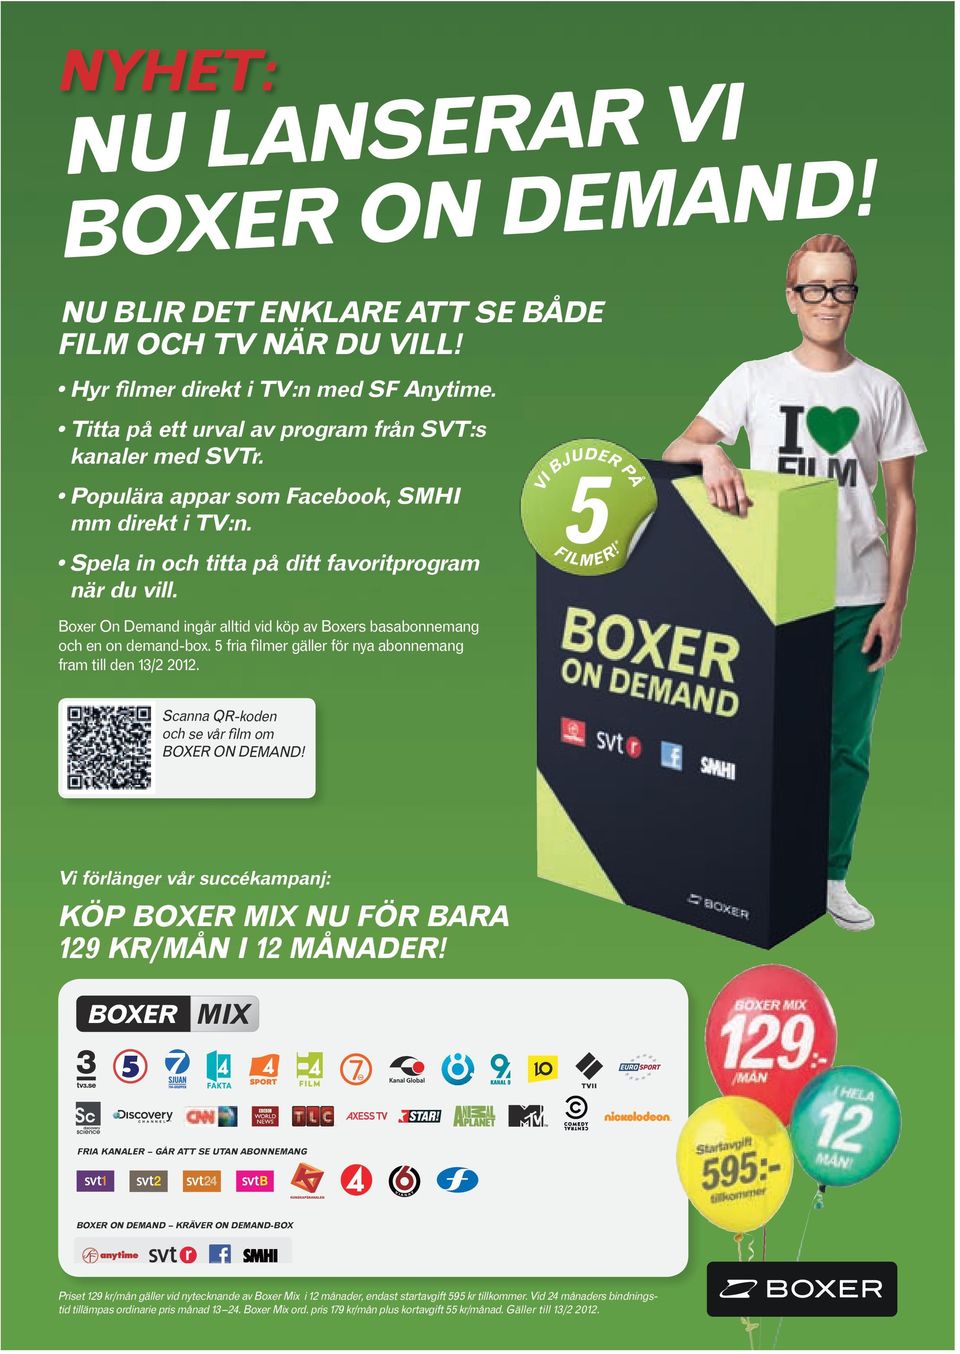 * Boxer On Demand ingår alltid vid köp av Boxers bas abonnemang och en on demand-box. 5 fria filmer gäller för nya abonnemang fram till den 13/2 2012.